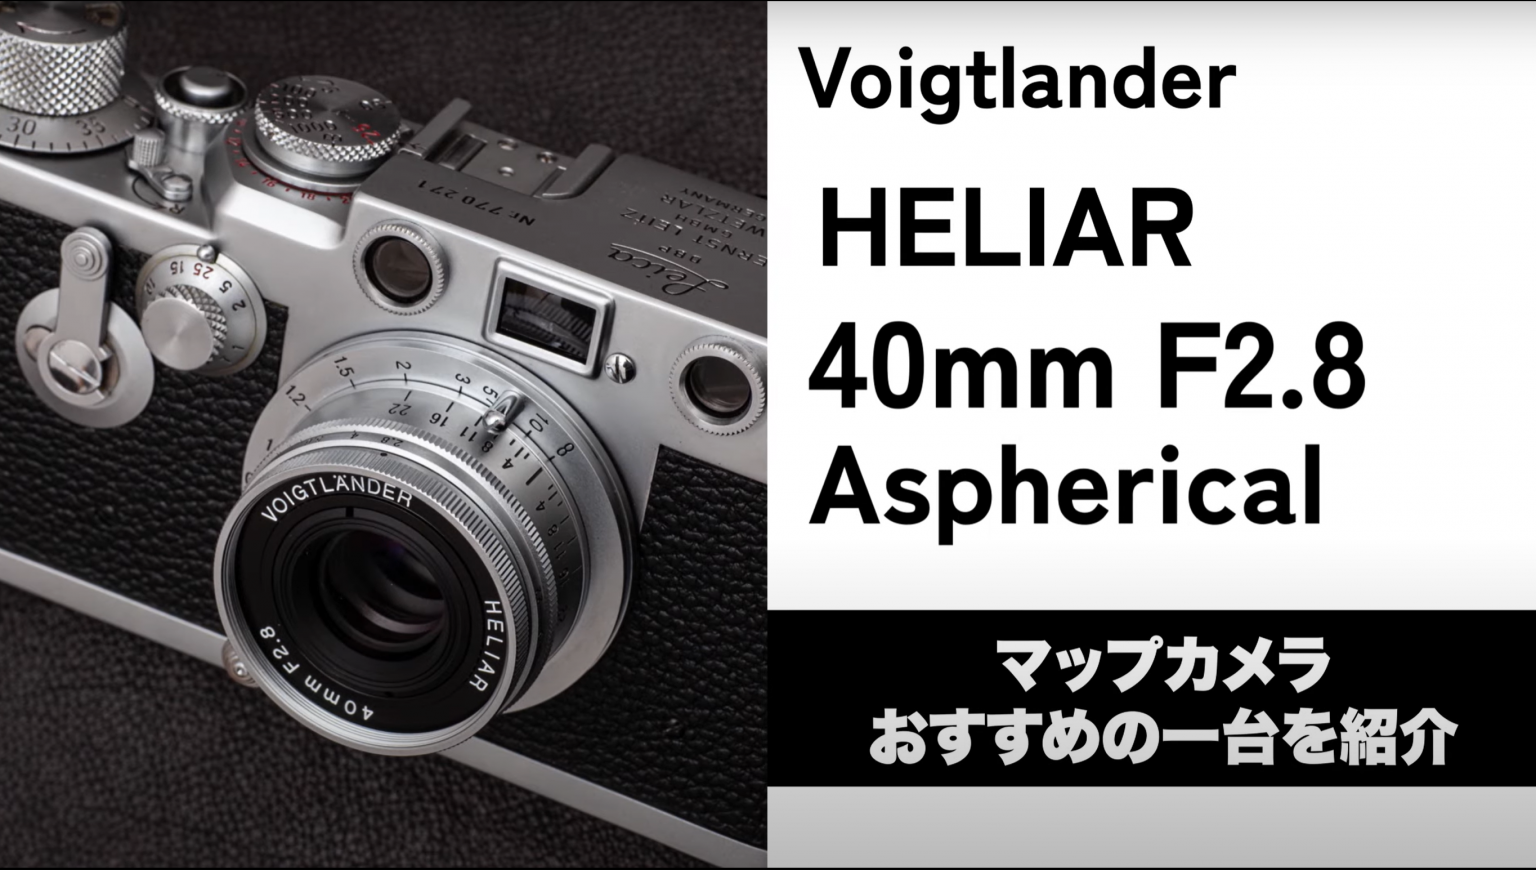 【Voigtlander】Youtubeで「Voigtlander HELIAR 40mm F2.8 Aspherical」をご紹介！